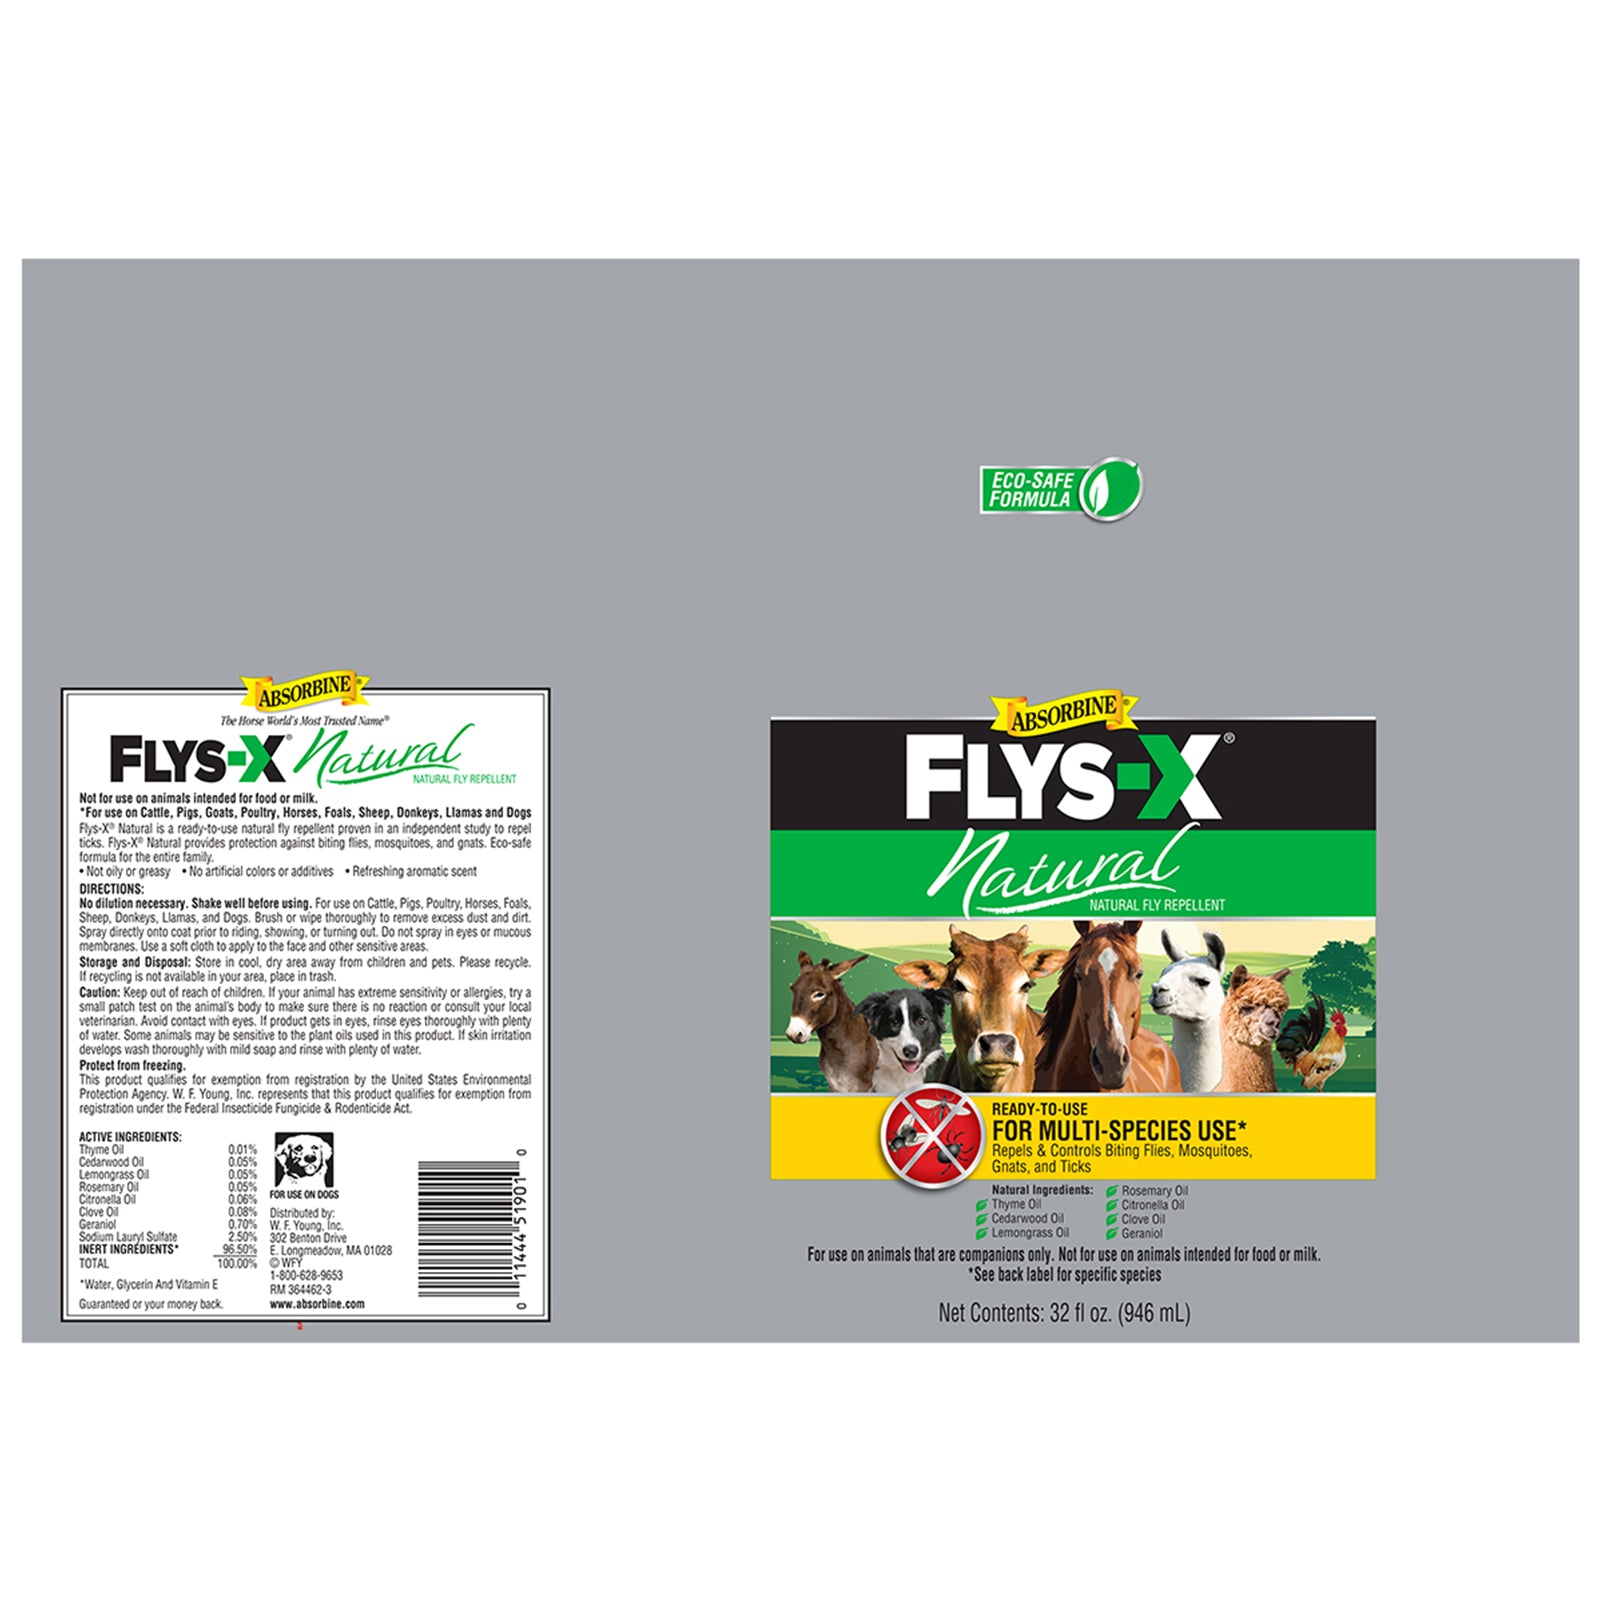 Absorbine Flys-X Natural, natural fly repellent 32 fluid oz. bottle label.